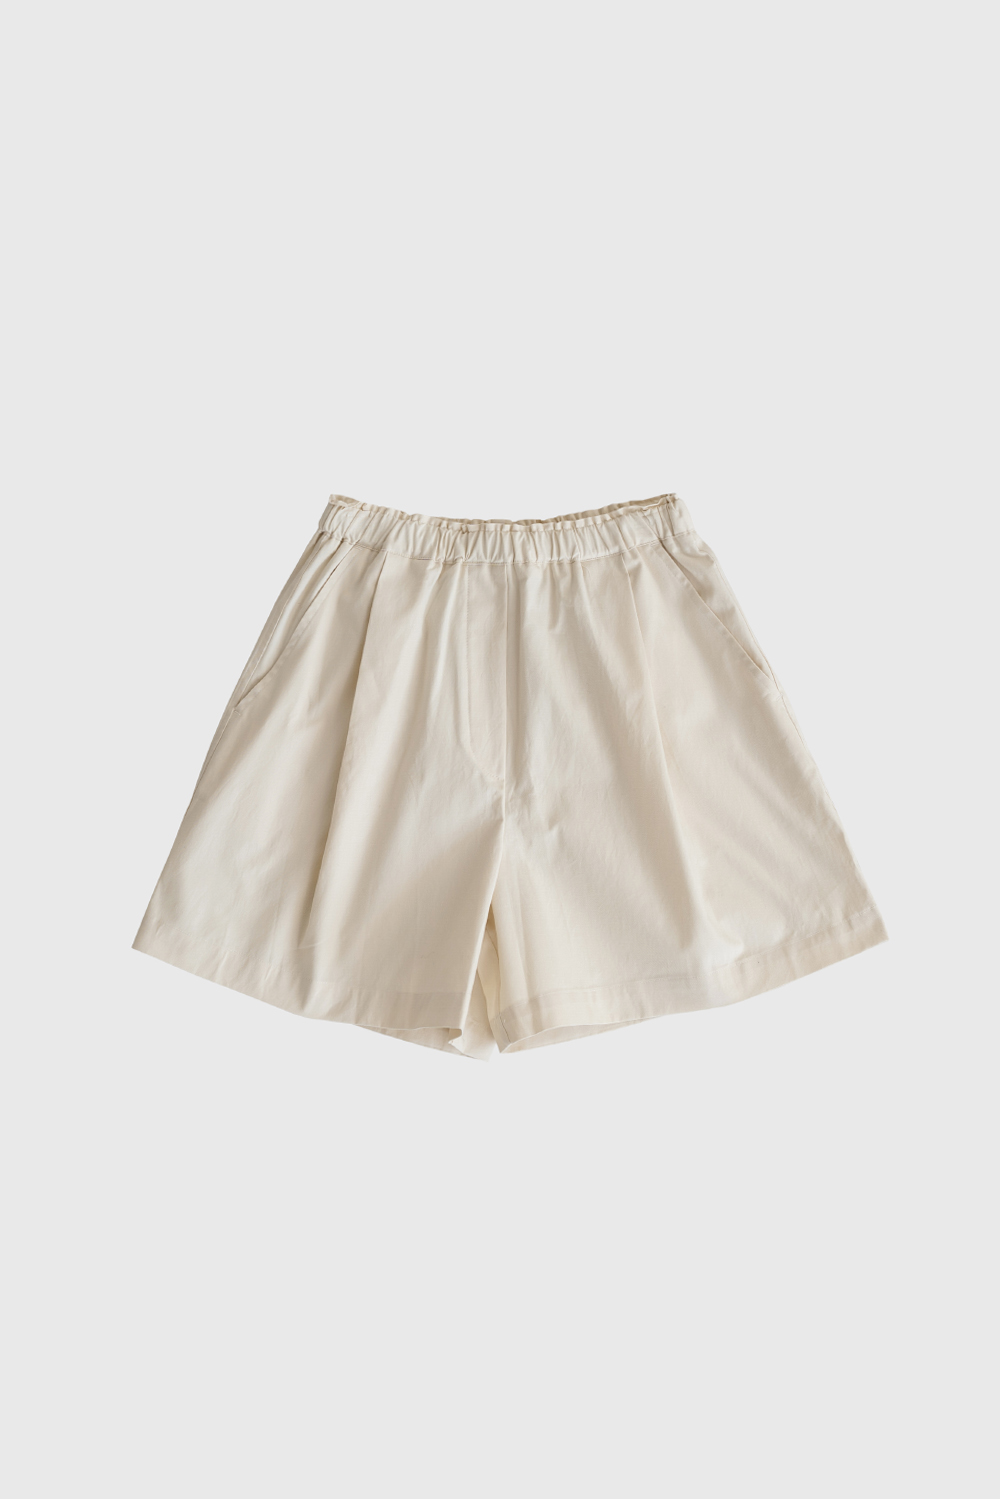 17464_Cotton Shorts